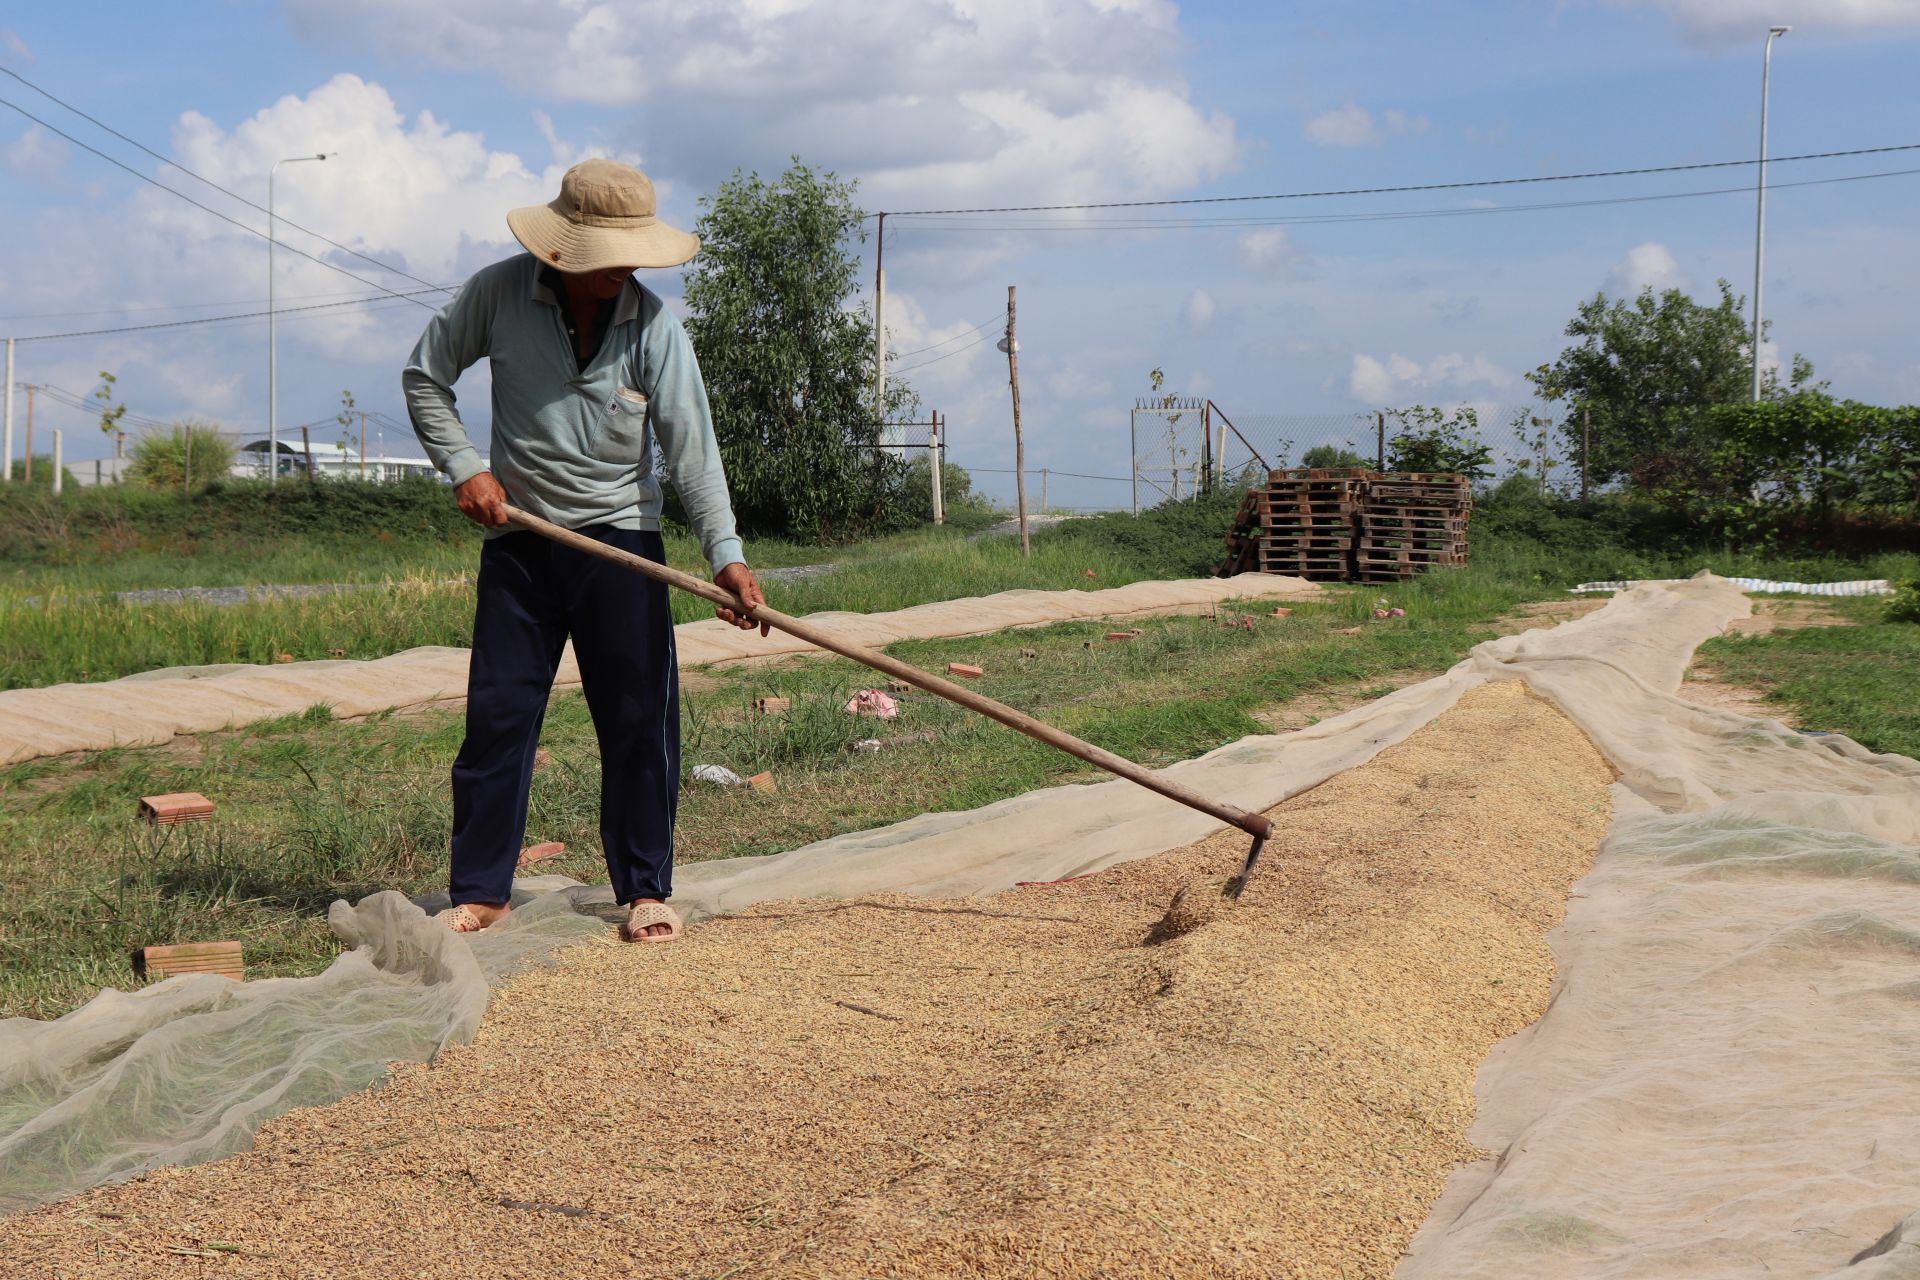 Sáng chế băng tải vận chuyển lúa vượt cả sông, ông nông dân Tây Ninh khiến cả làng ai cũng khen - Ảnh 1.